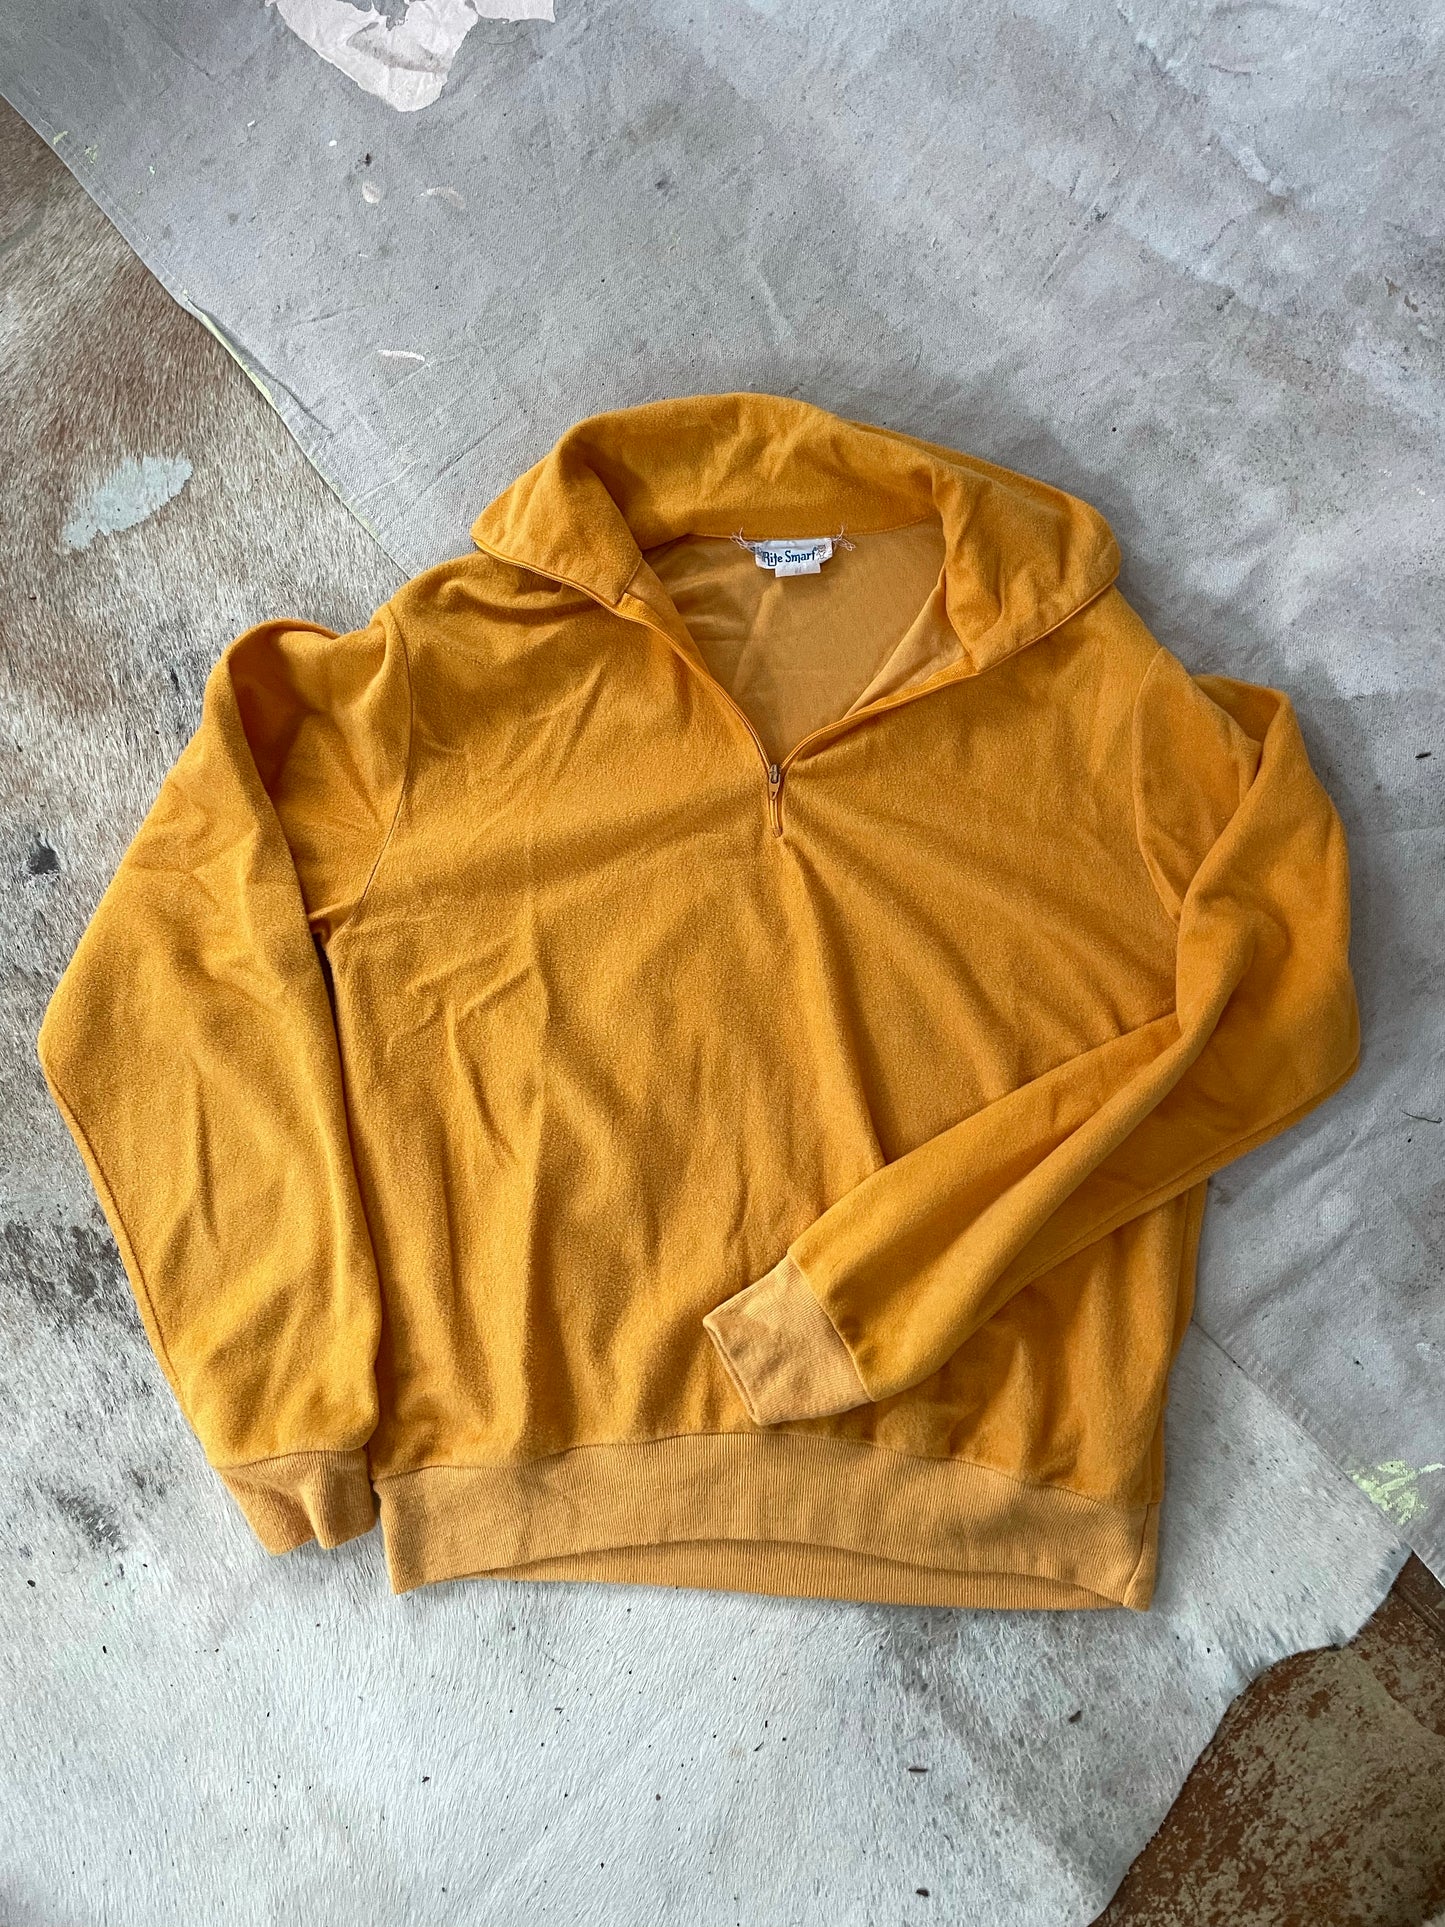 Marigold Quarter Zip Sweatshirt